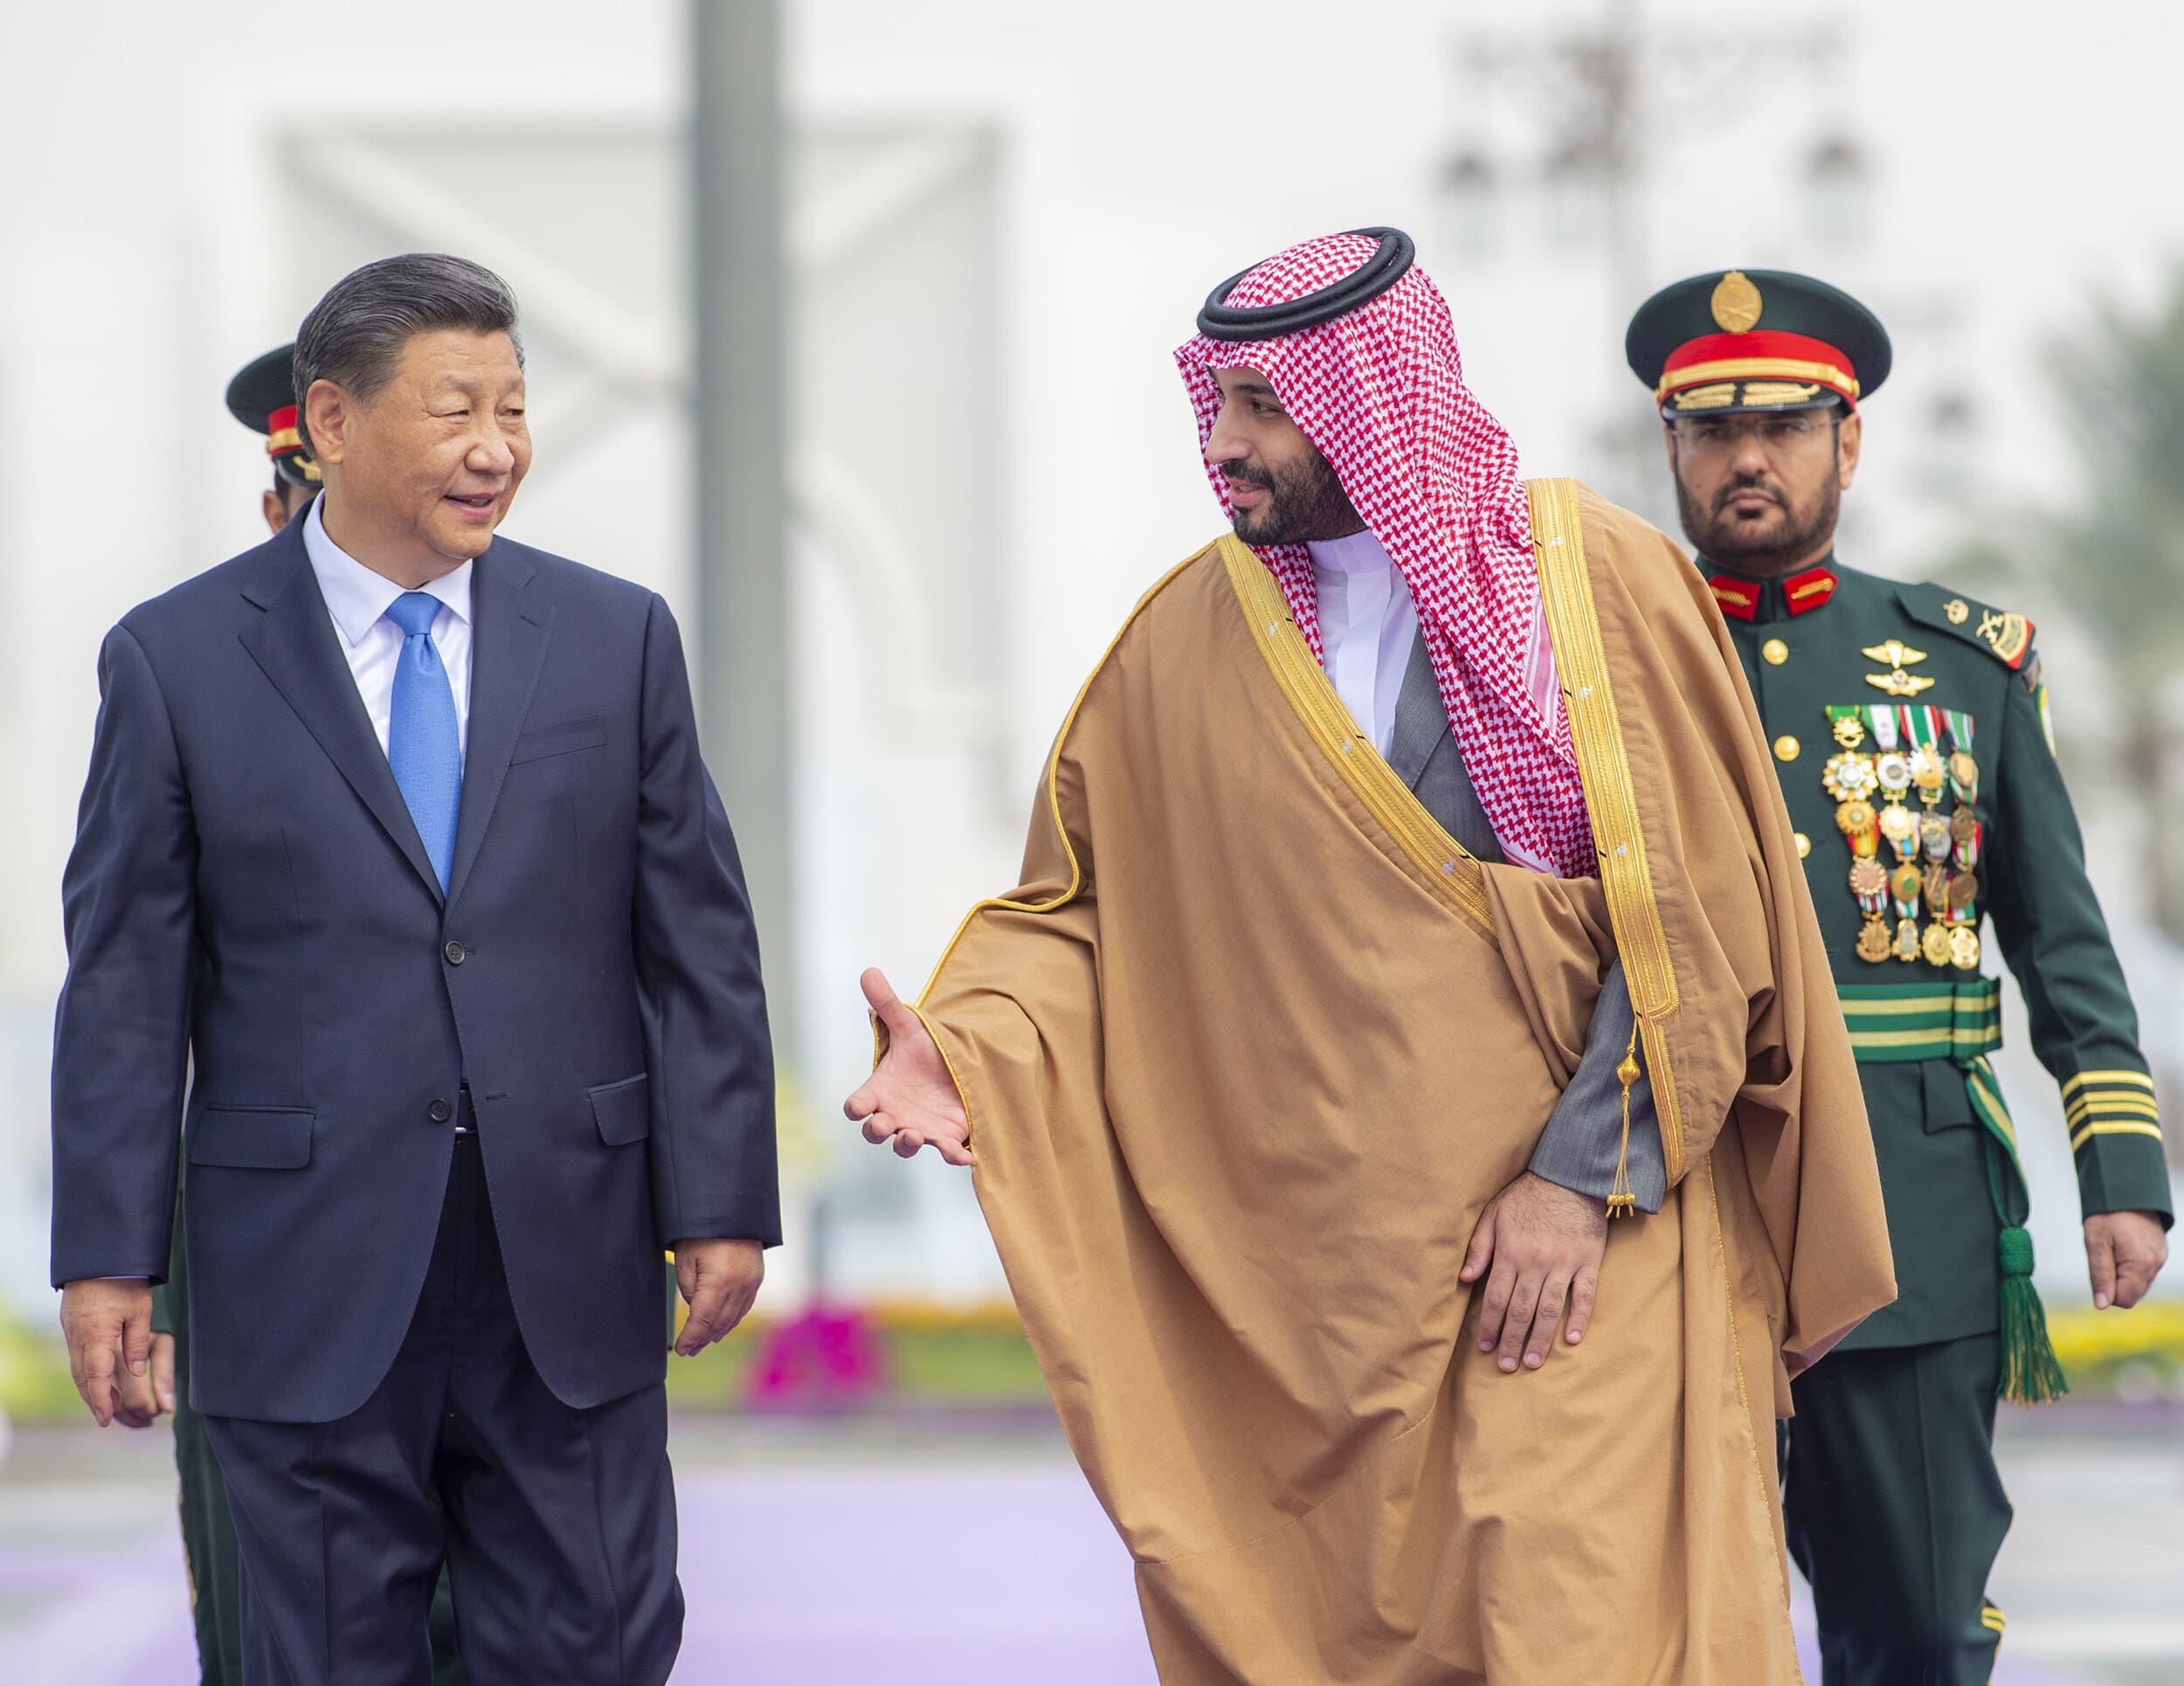 Chiny i Arabia Saudyjska są częścią wielobiegunowego porządku światowego: ministrowie